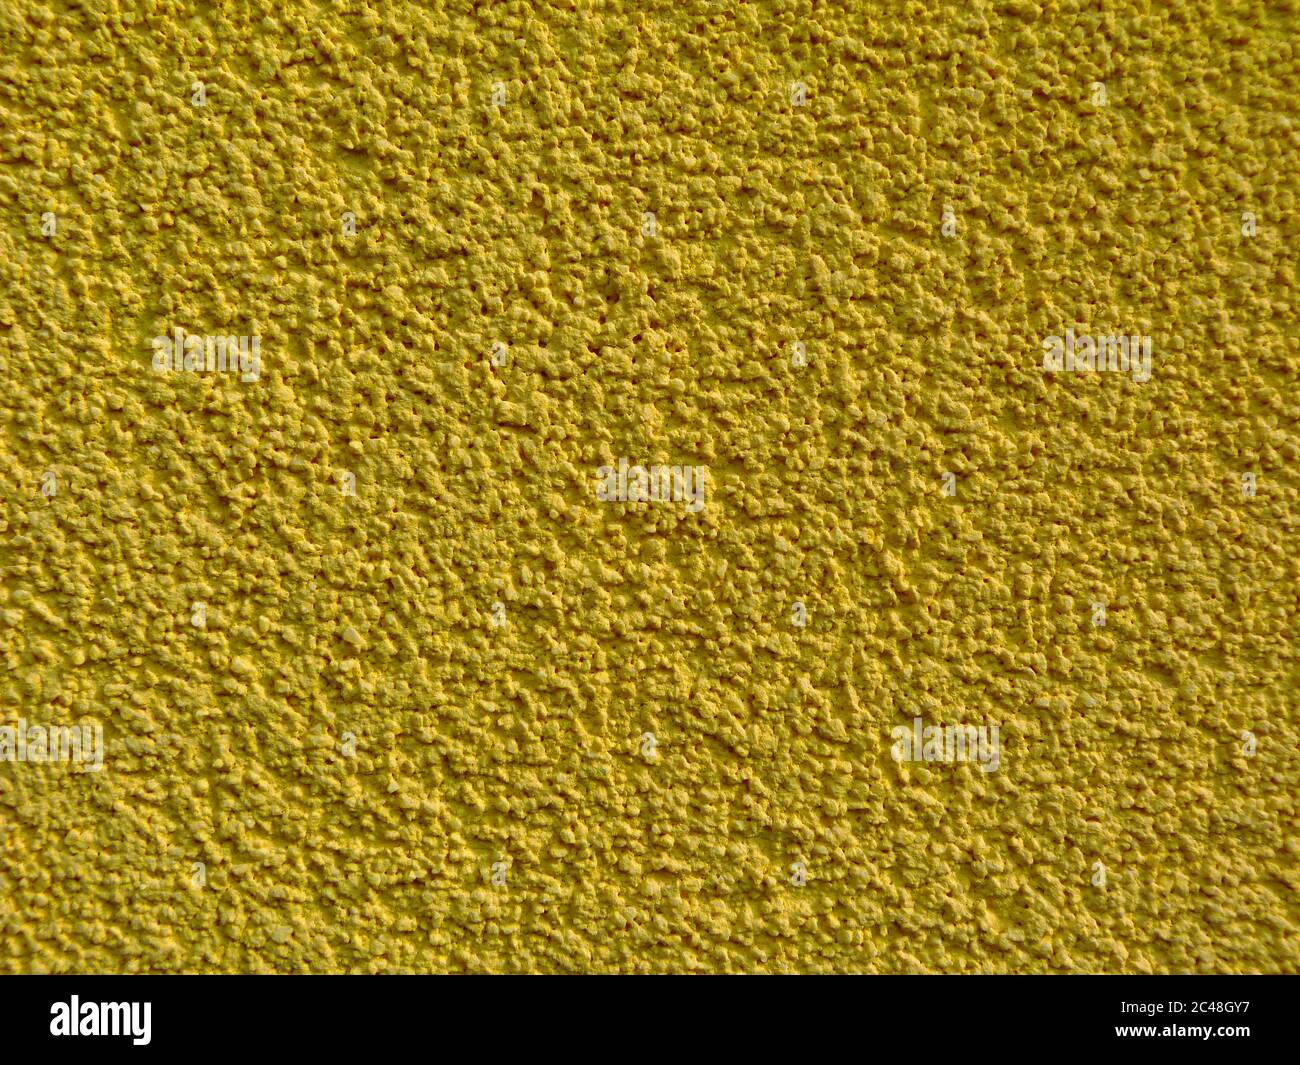 Gelbe ockerfarbene Stuckstruktur an der Außenwand mit feinen Körnern. Sandpapier wie sandige, grobkörnige Oberfläche. Nahaufnahme. Muster und Texturen Konzept Stockfoto